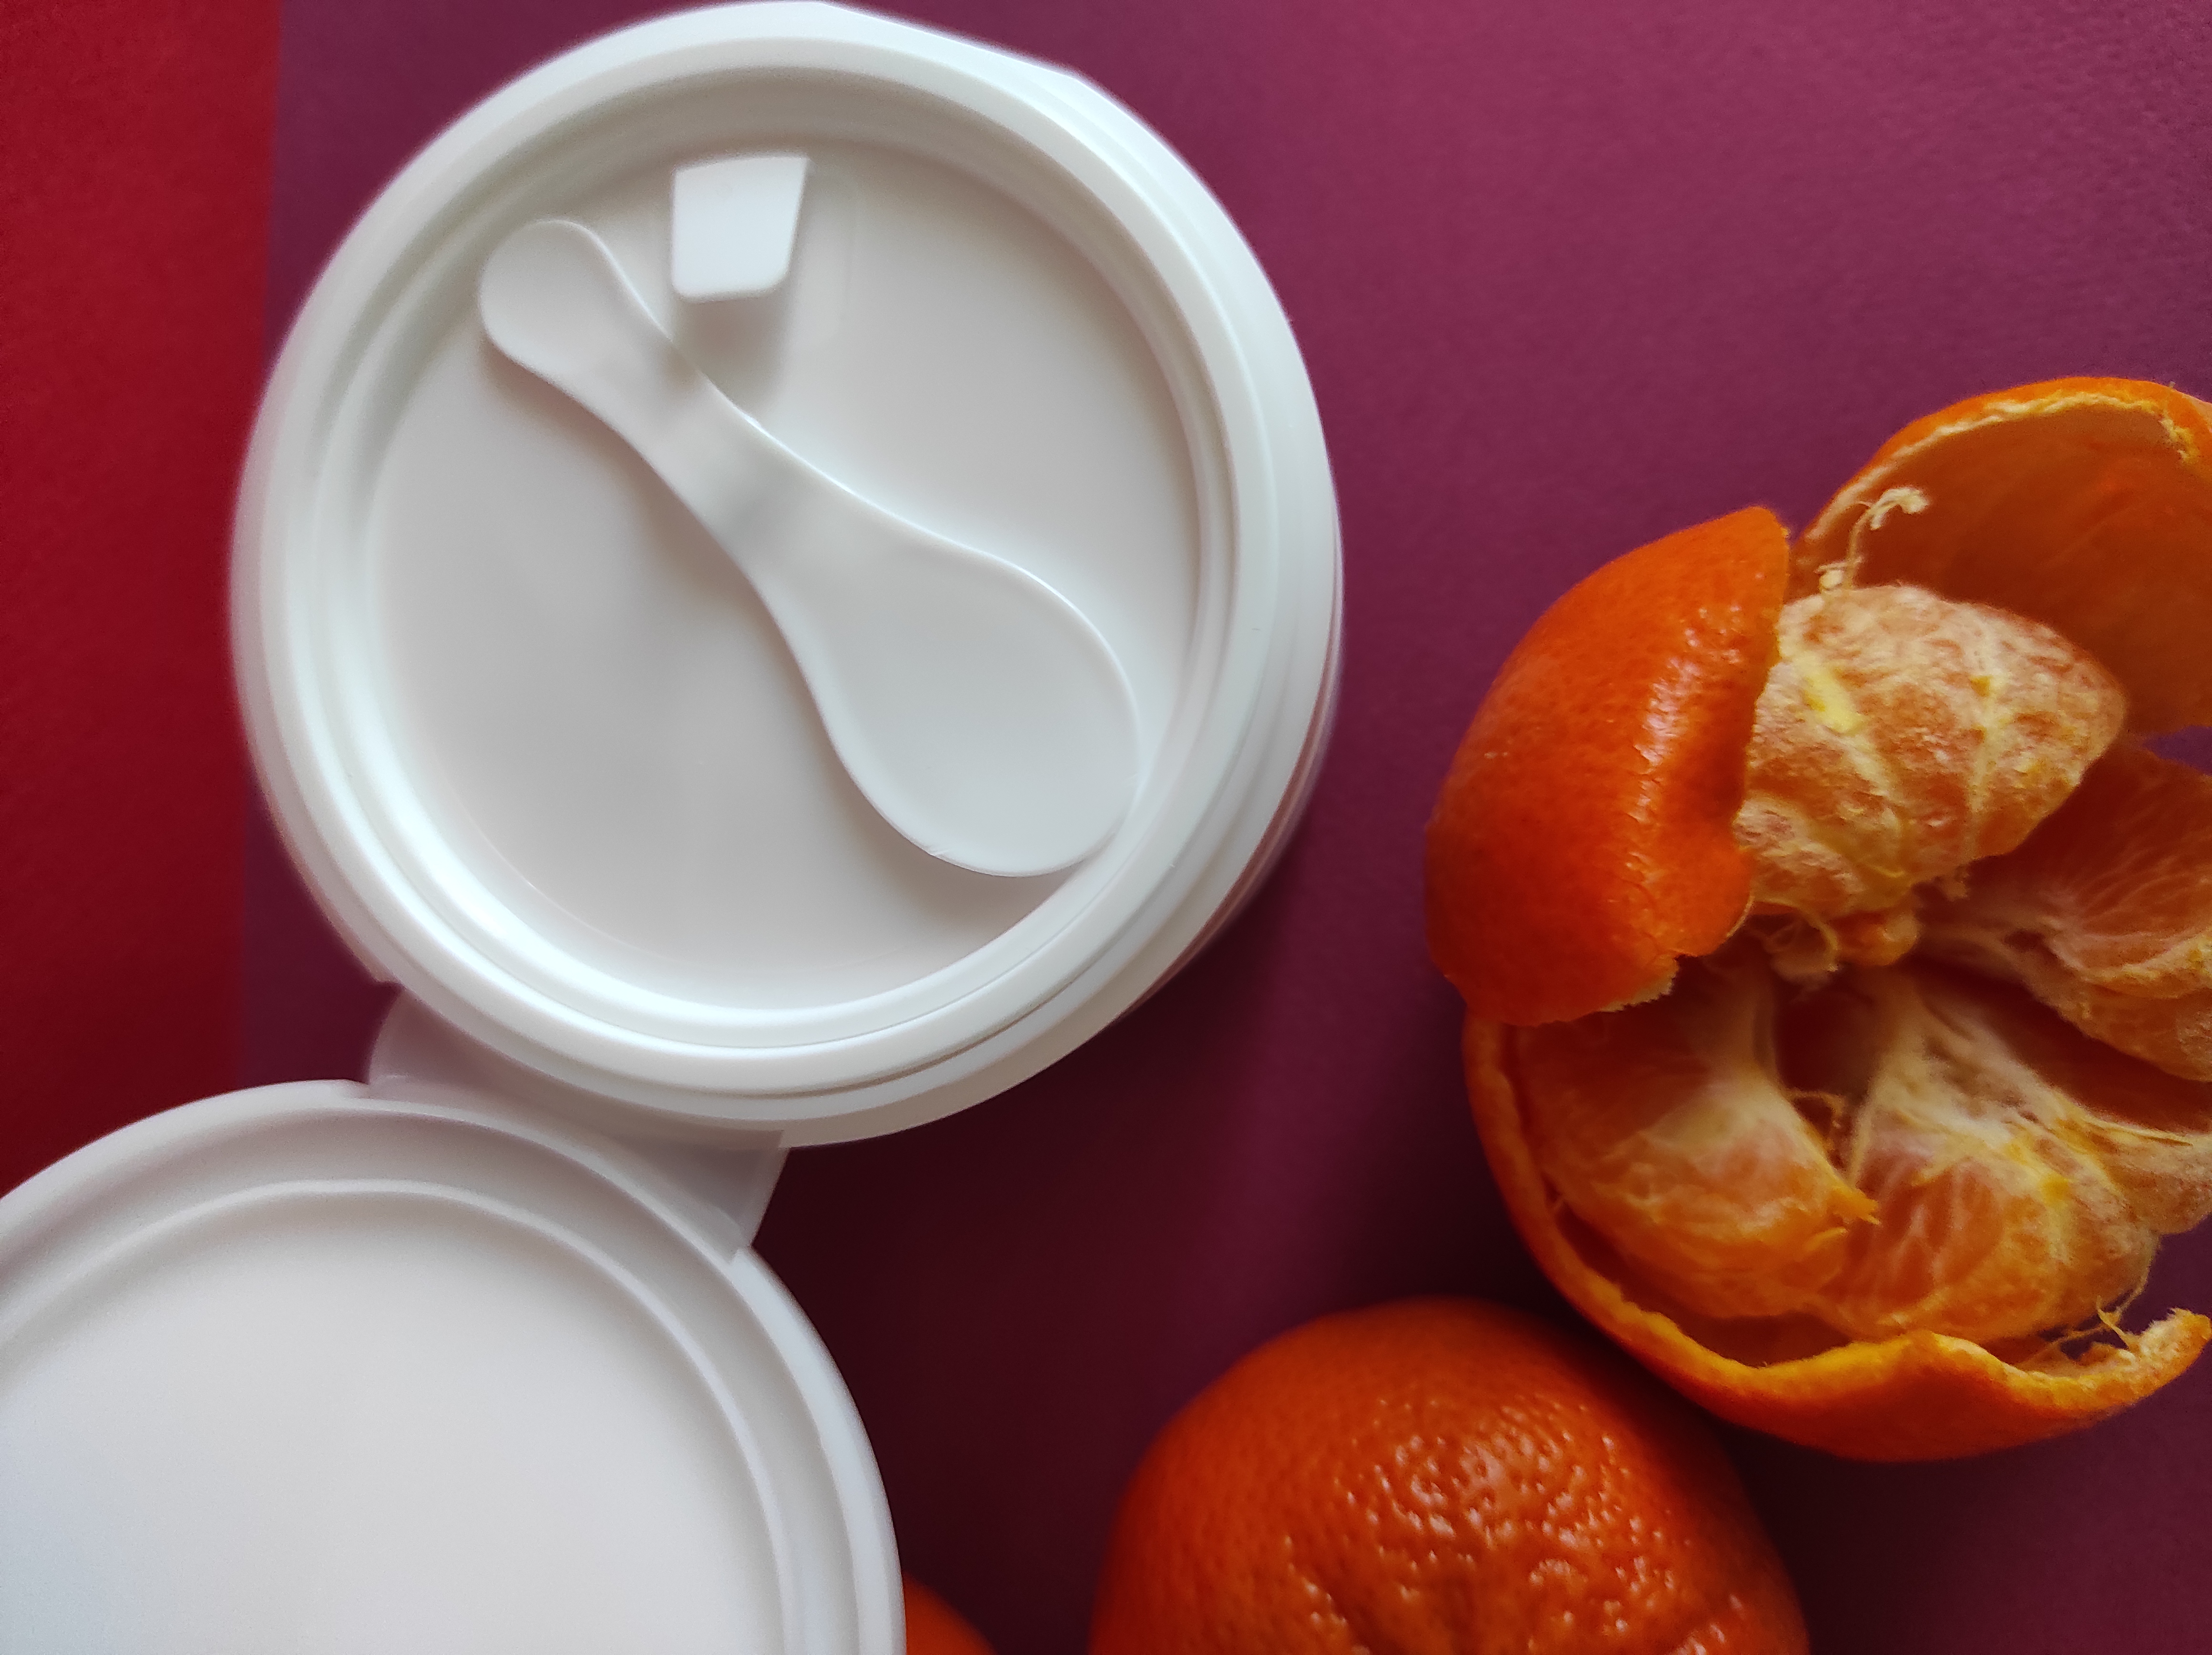 Heimish All Clean Balm Mandarin – гідрофільний бальзам з ароматом свят